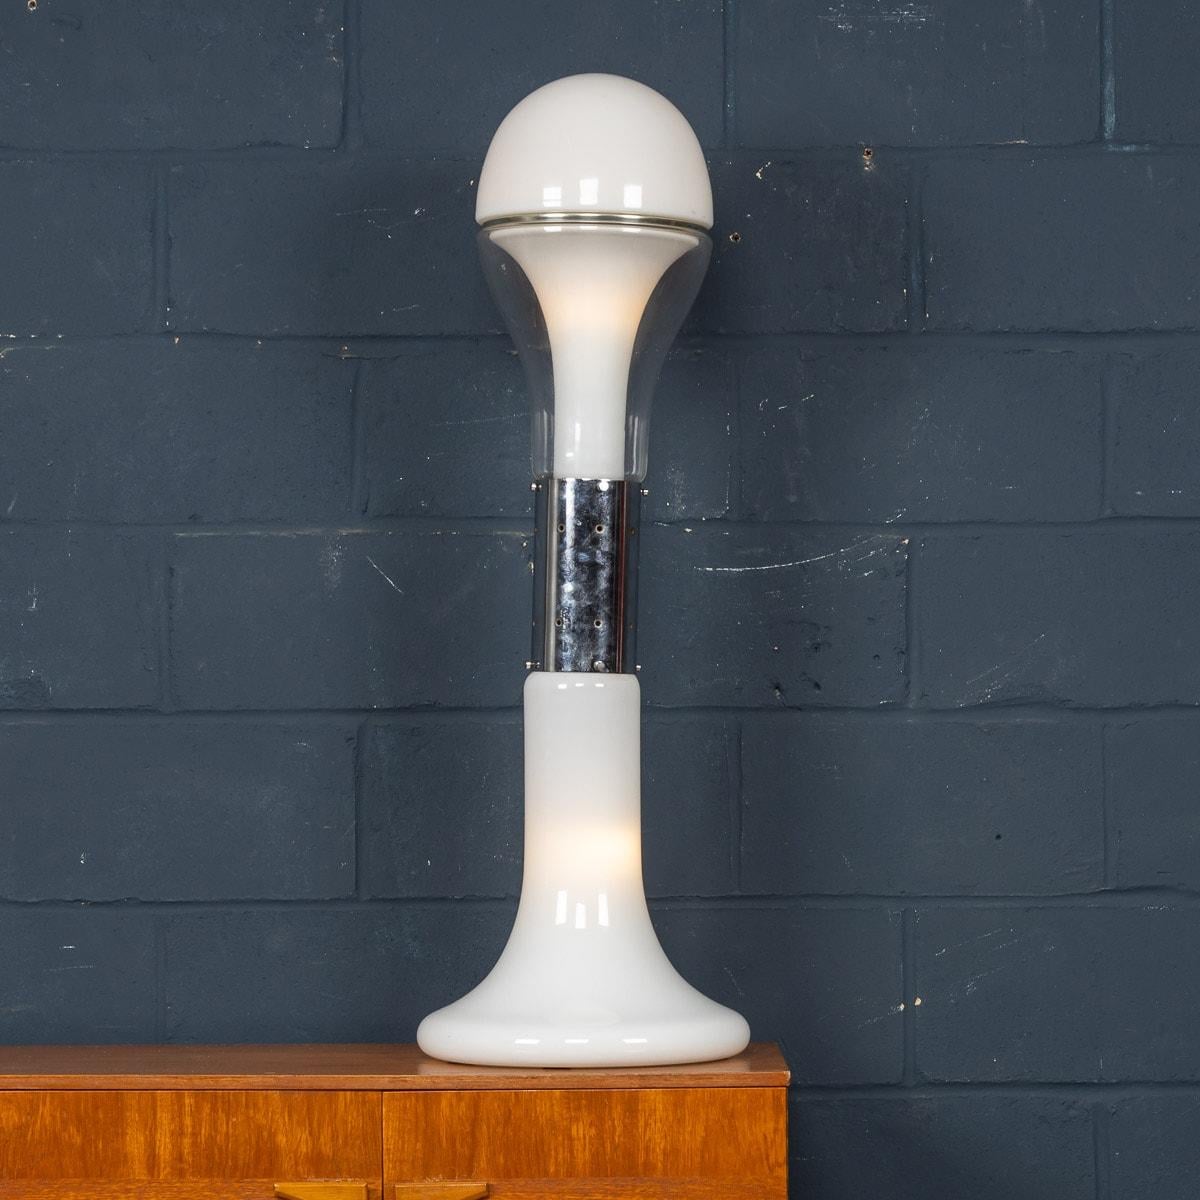 Un superbe lampadaire vintage en métal chromé, verre opalin et verre clair par Carlo Nason des années 1970. La lampe se compose de trois parties en verre soufflé à la main de Murano. Cette lampe en chrome et en verre illustre le savoir-faire de